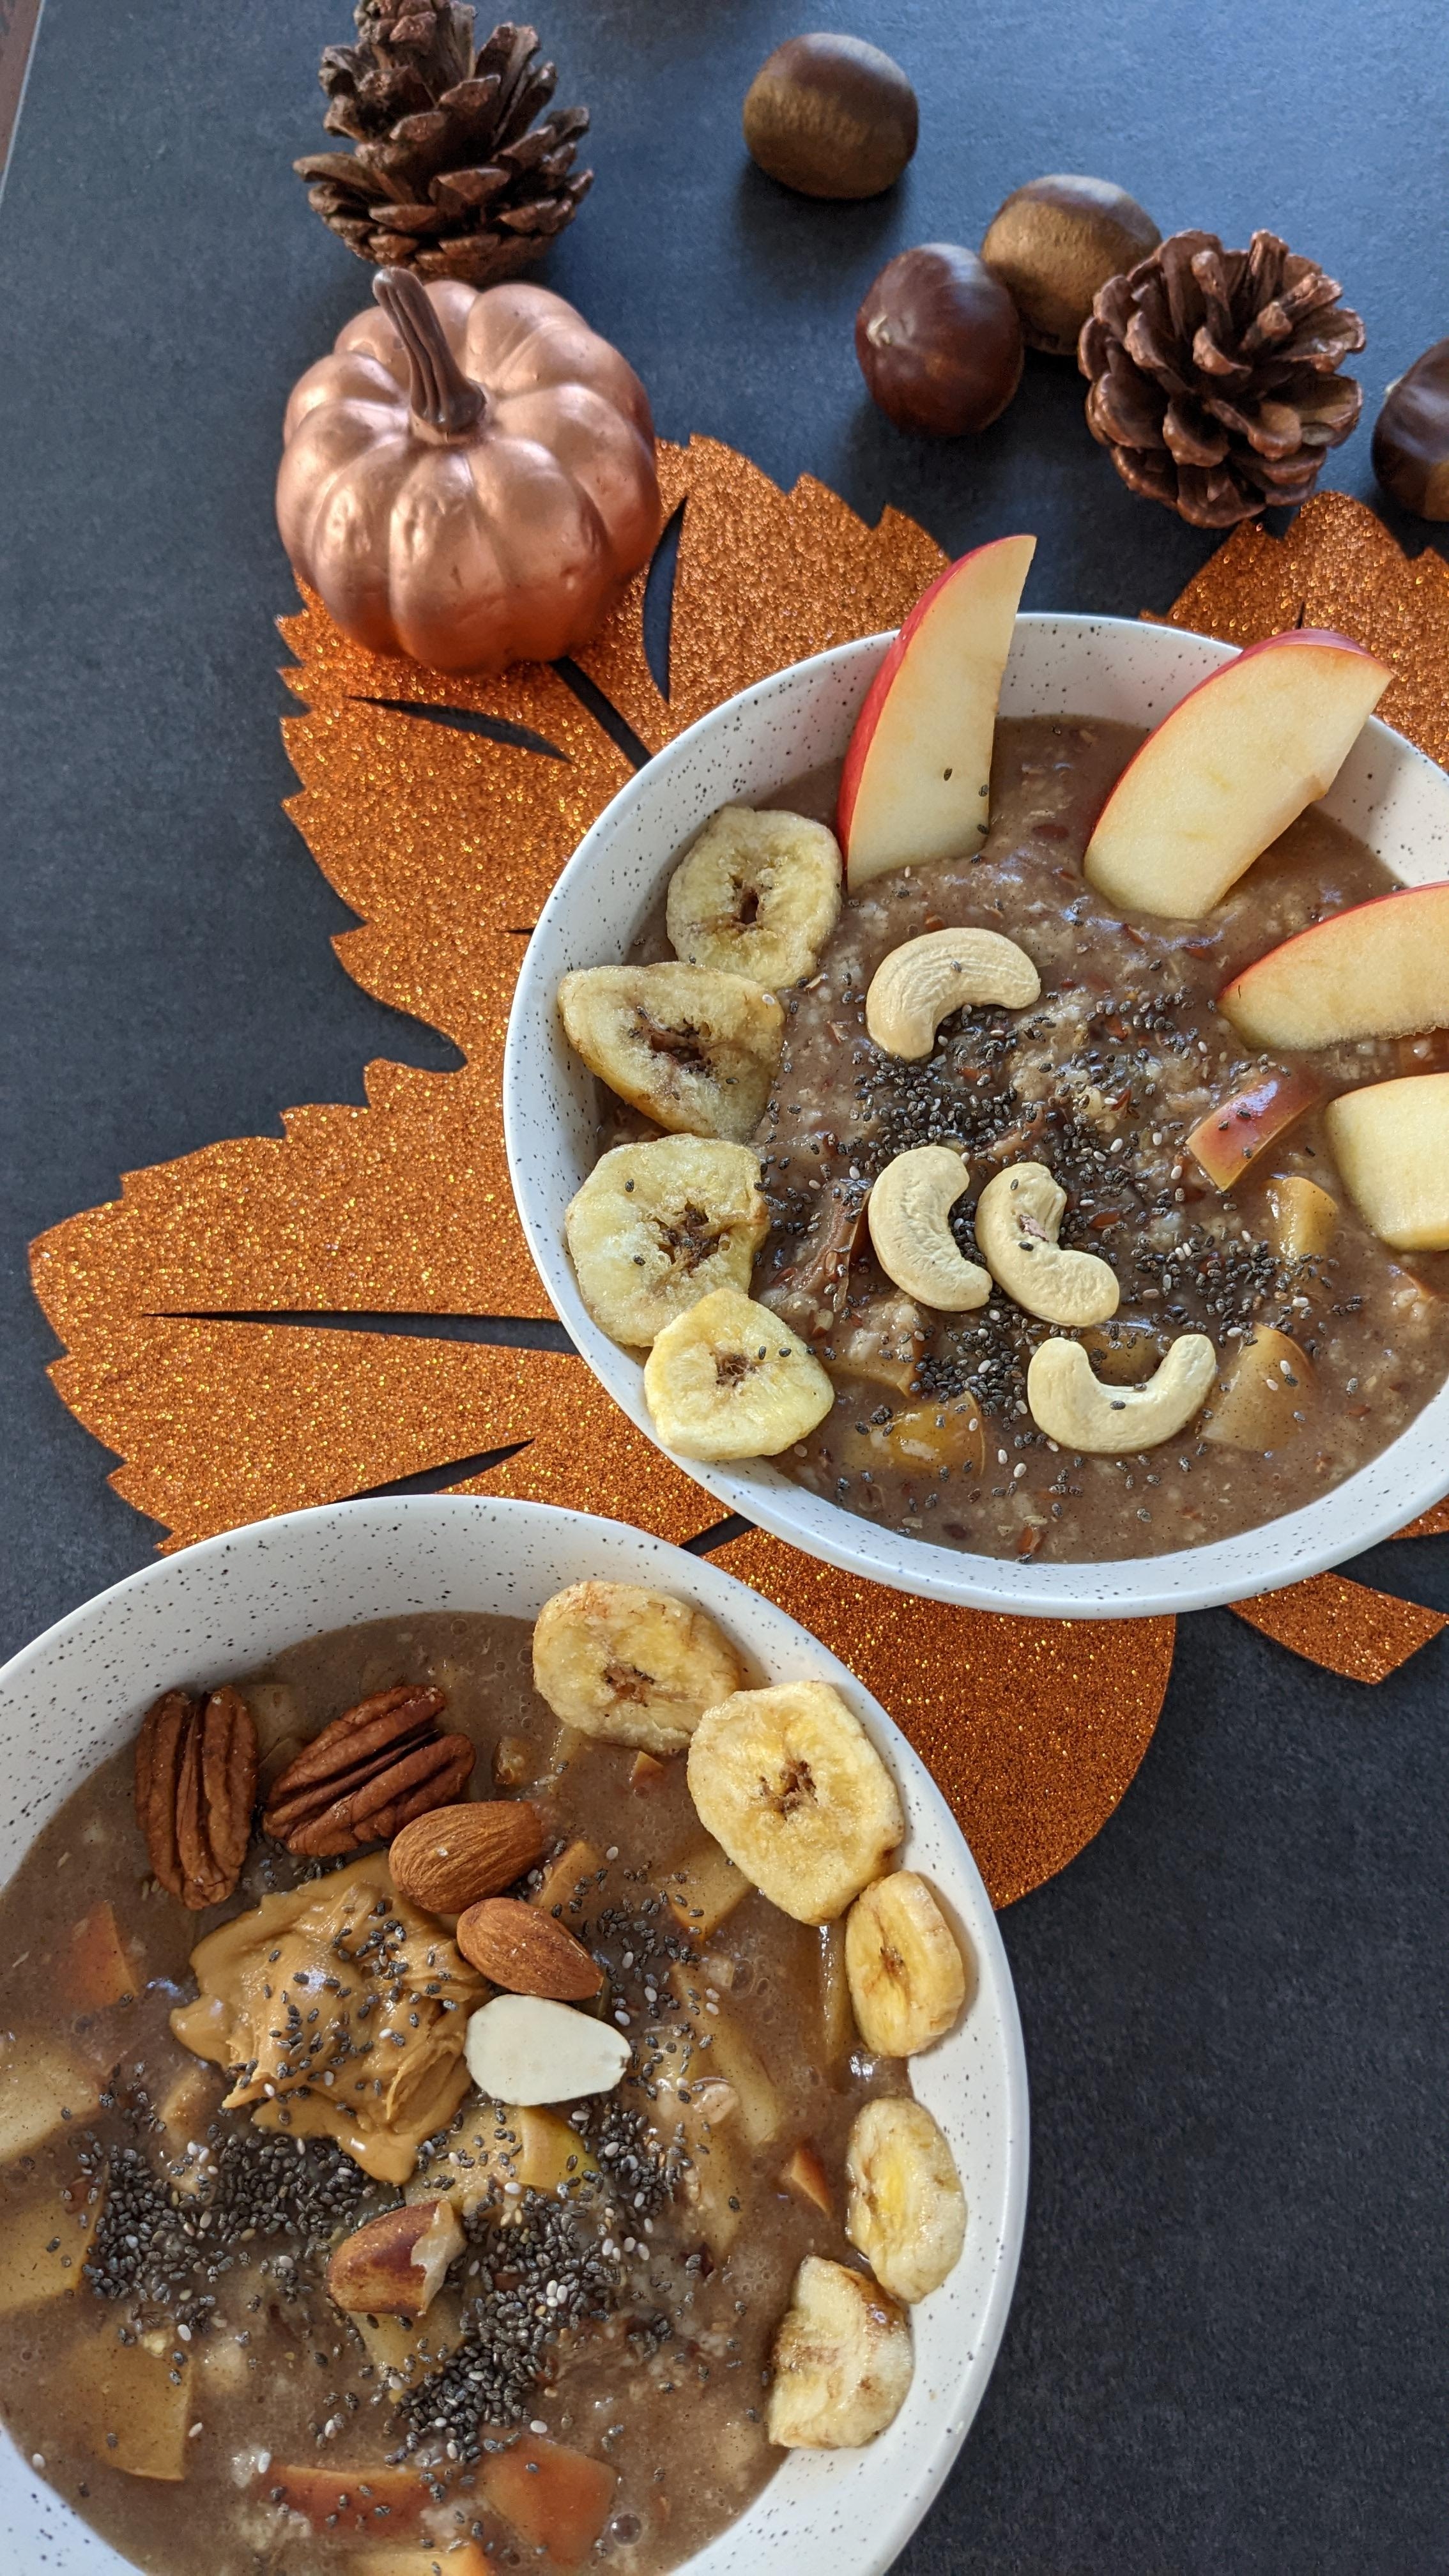 Ein leckerer veganer Apfel-Zimt-Porridge mit Datteln, getrocknete Bananen, Nüsse und Erdnussmus 🥜🍌#Frühstück #brunch 